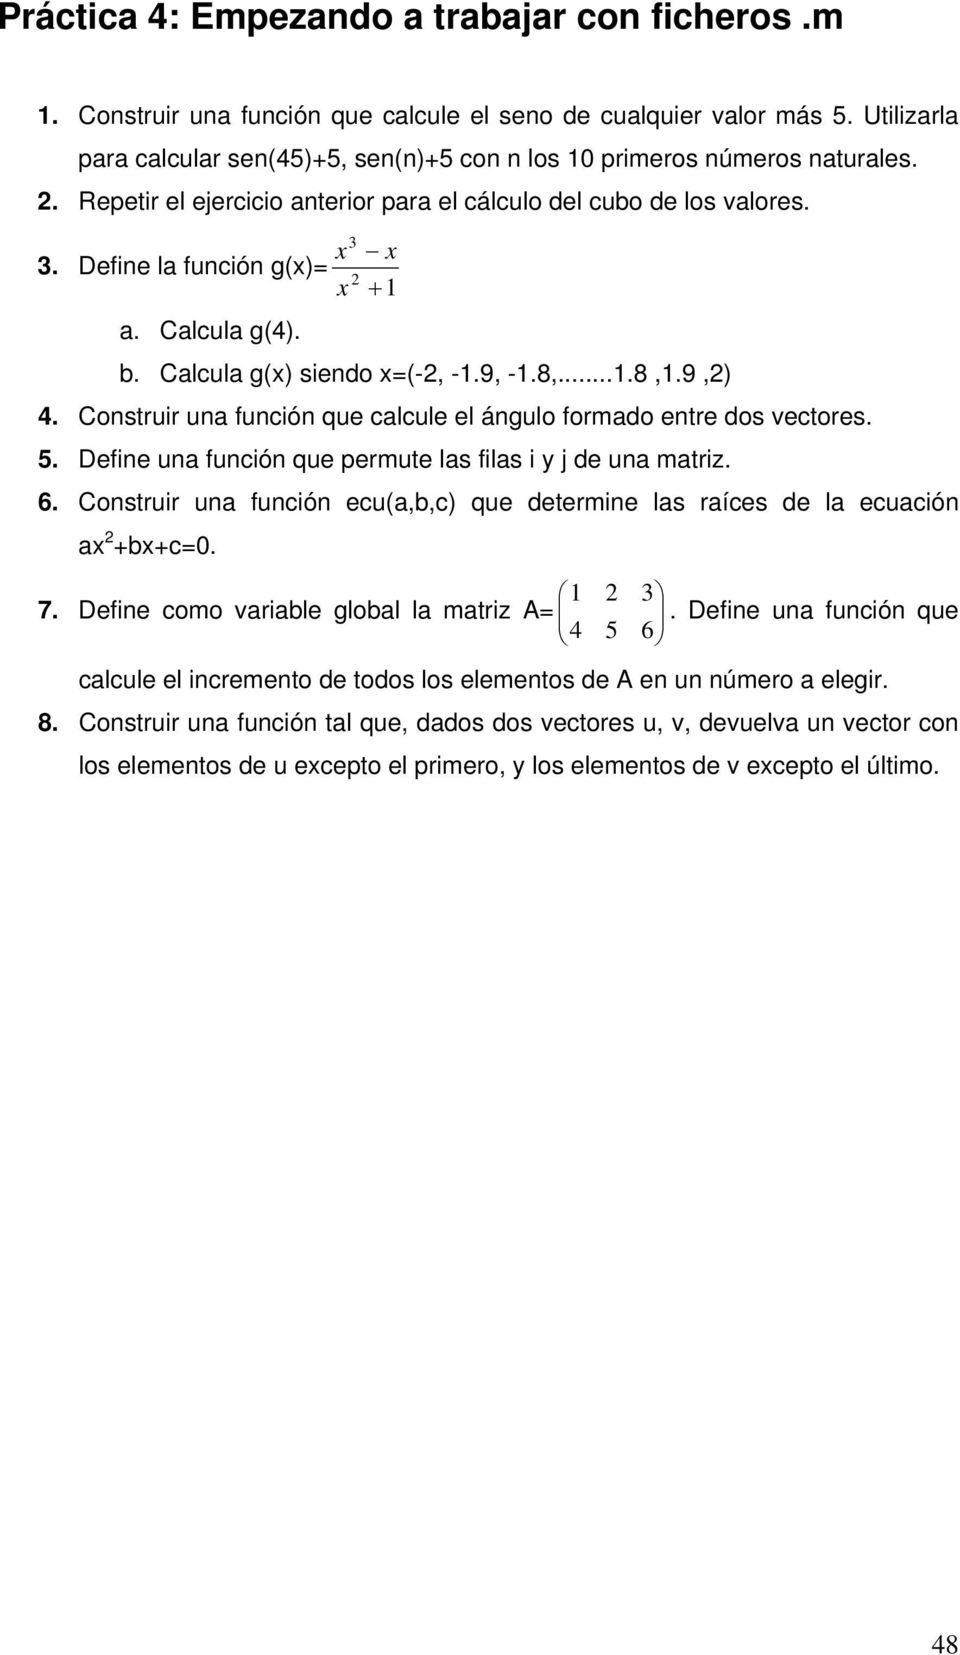 Define la función g(x)= x 3 2 x + 1 a. Calcula g(4). b. Calcula g(x) siendo x=(-2, -1.9, -1.8,...1.8,1.9,2) 4. Construir una función que calcule el ángulo formado entre dos vectores. 5.